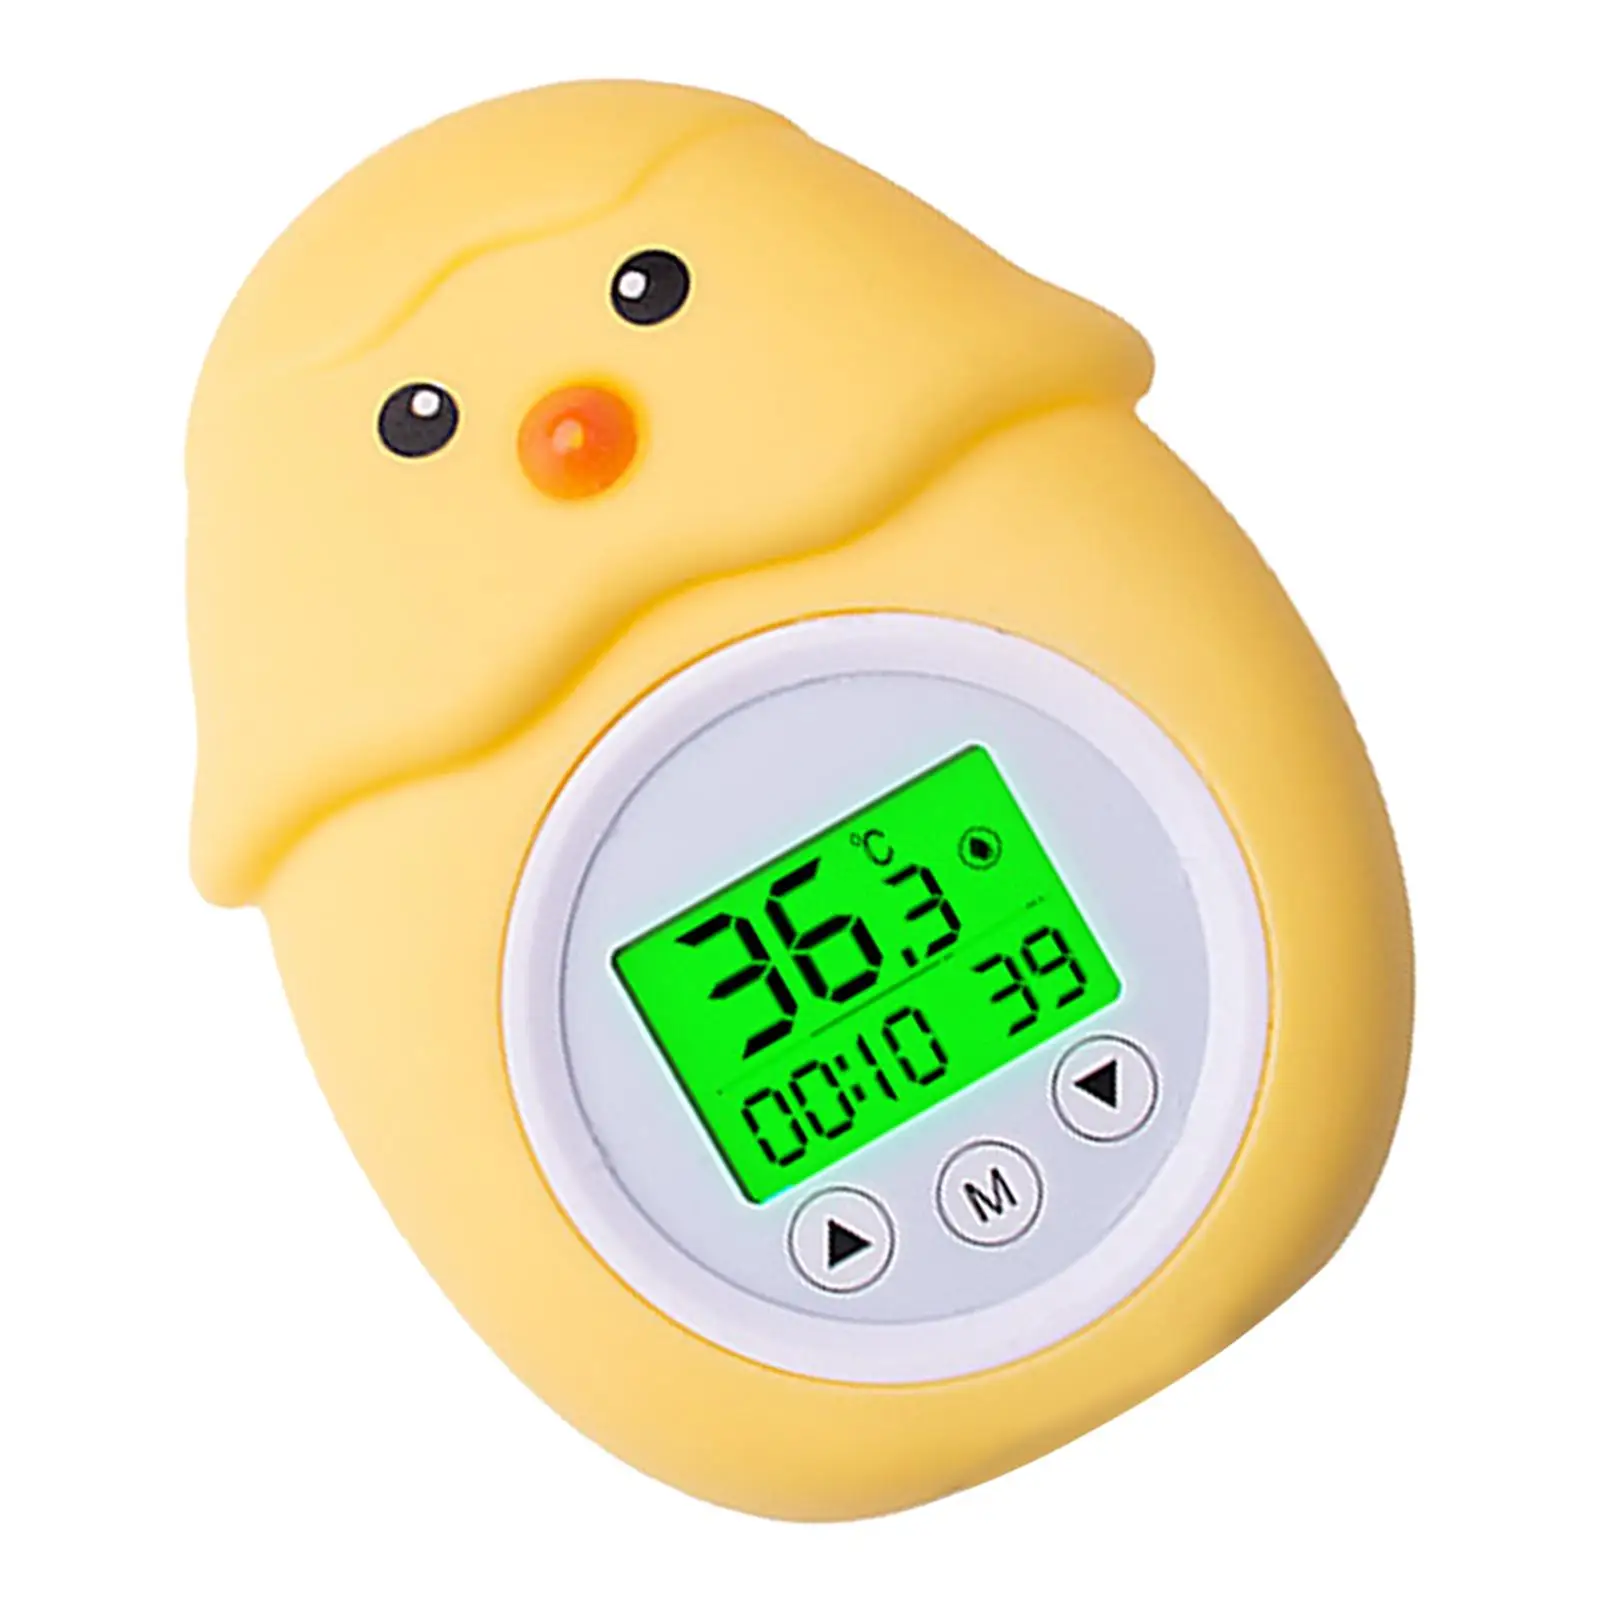 Temperature Measurement Toy Bath for Infant Bath Tub Shower Kids